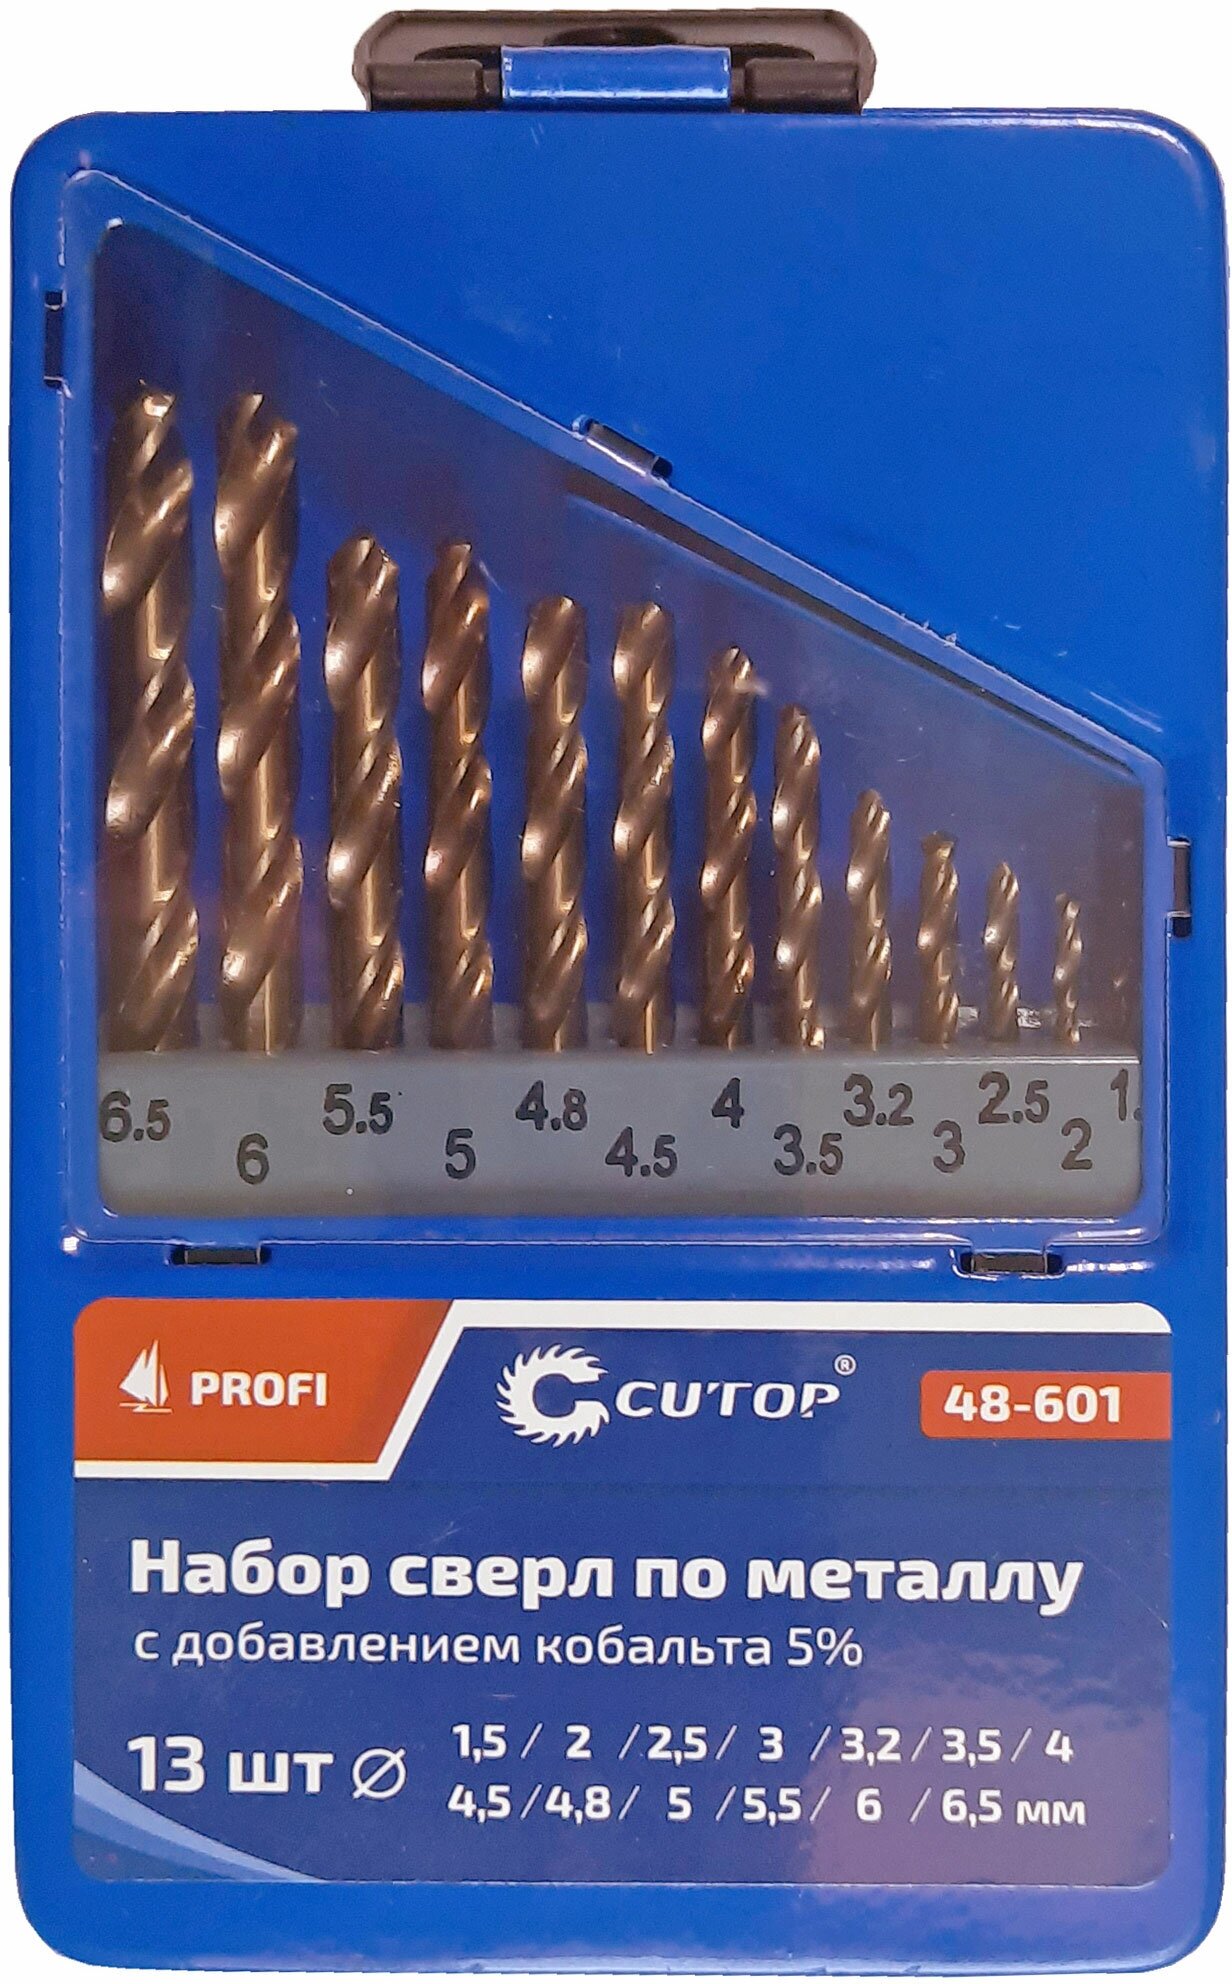 Набор сверл по металлу с кобальтом 5% в металлической коробке; 1,5-6,5 мм (через 0,5мм + 3,2мм; 4,8мм), 13 шт, Cutop Profi